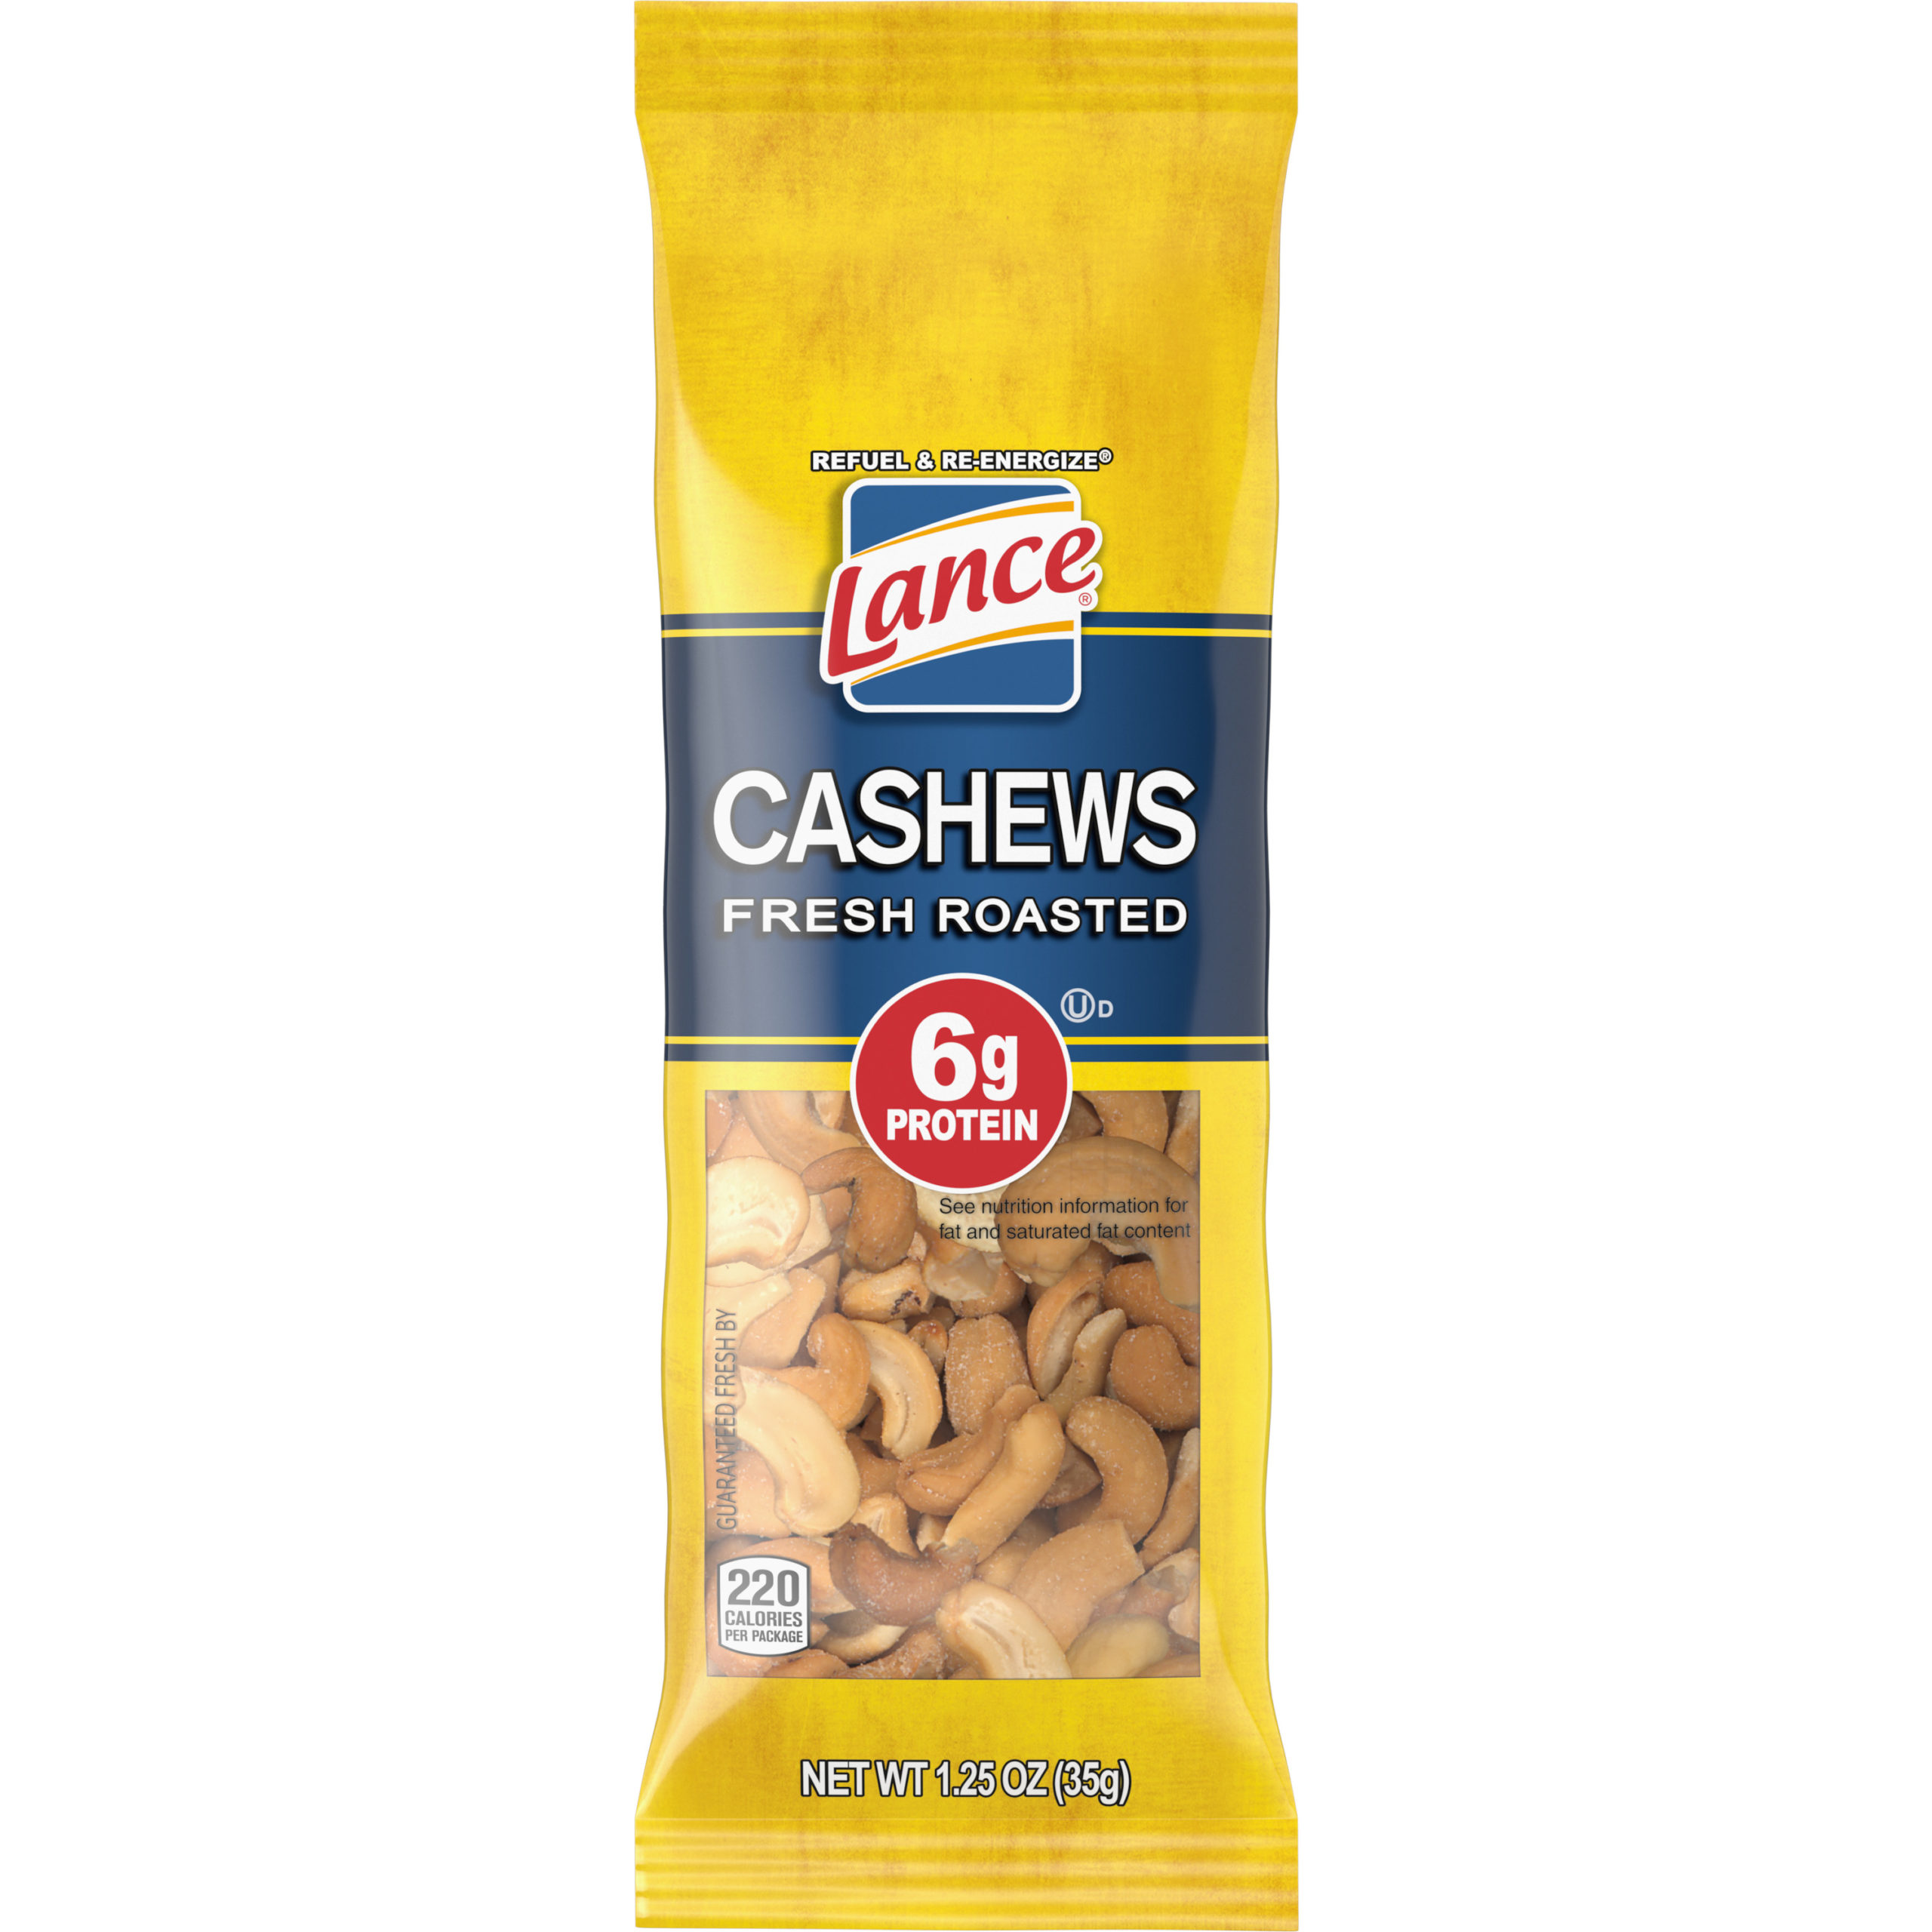 Cashews - Lance